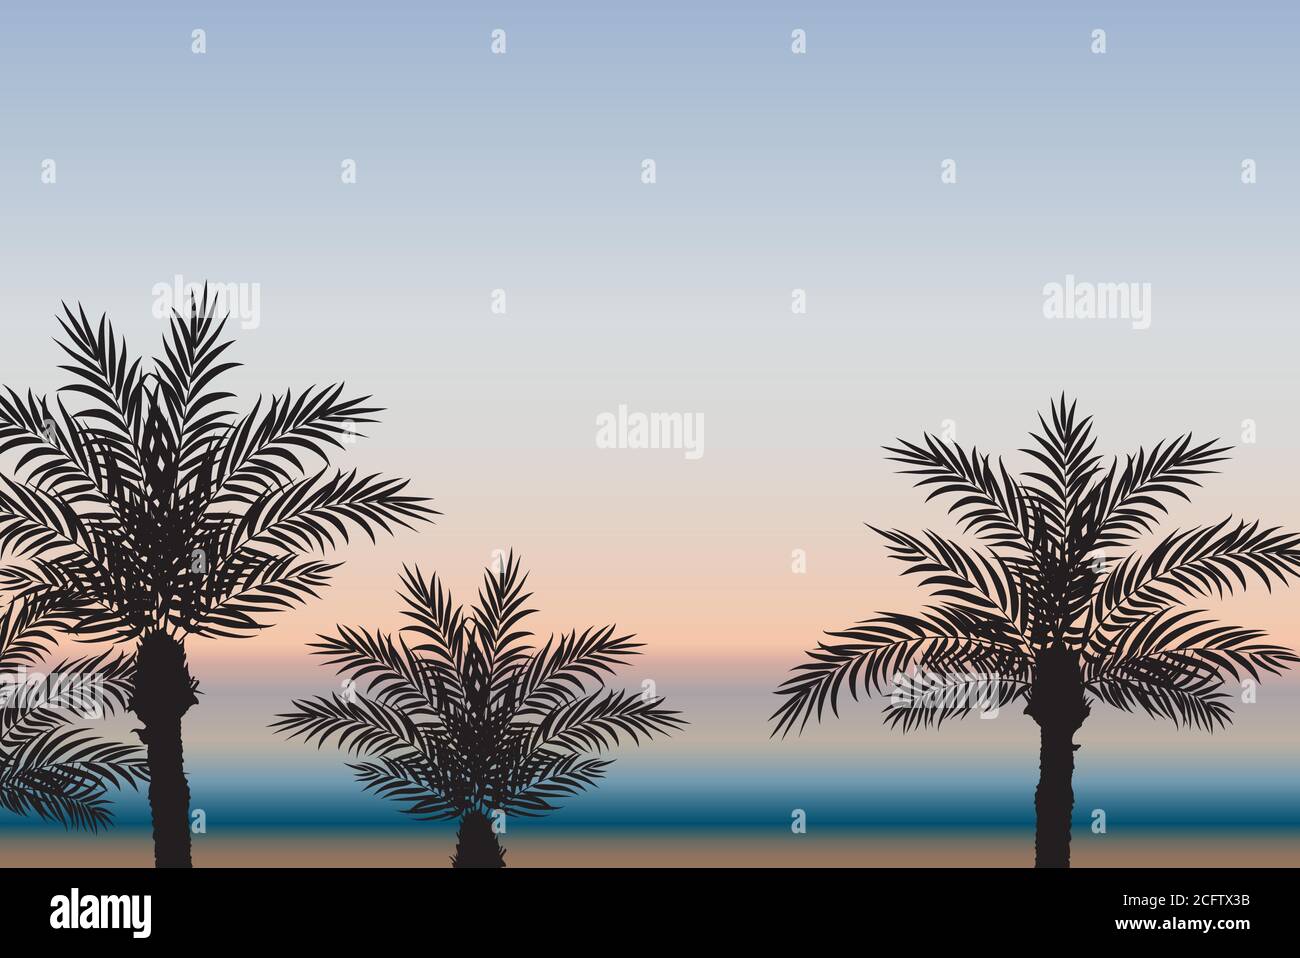 Palmen vor dem Hintergrund des Meeres und Sonnenuntergang. Vektorgrafik Stock Vektor